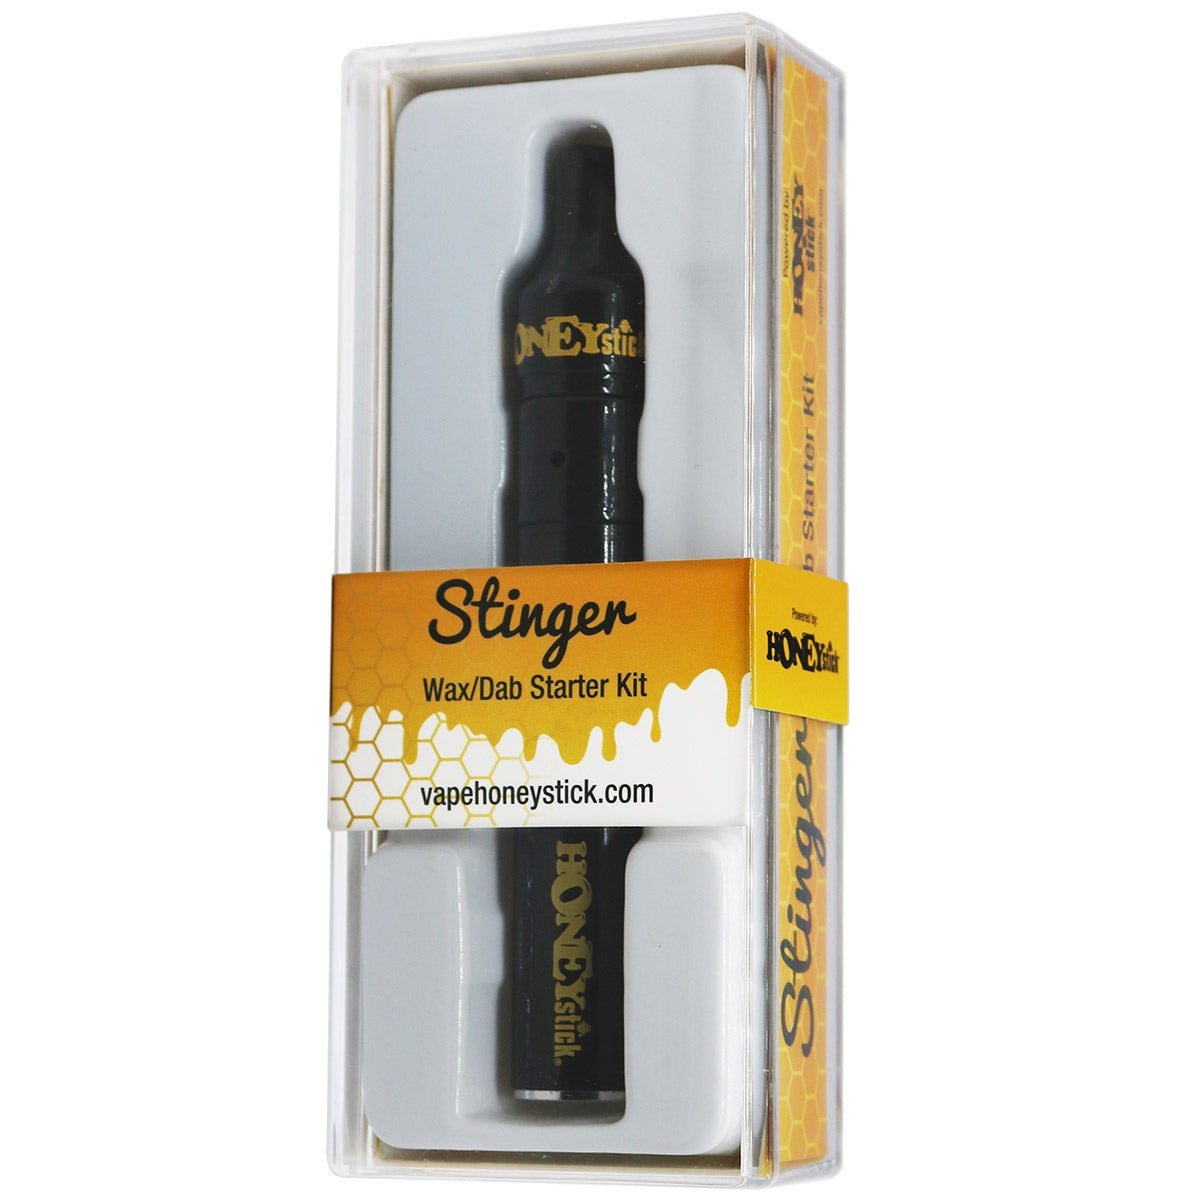 Stinger Ceramic Wax Vaporizer Starter Kit